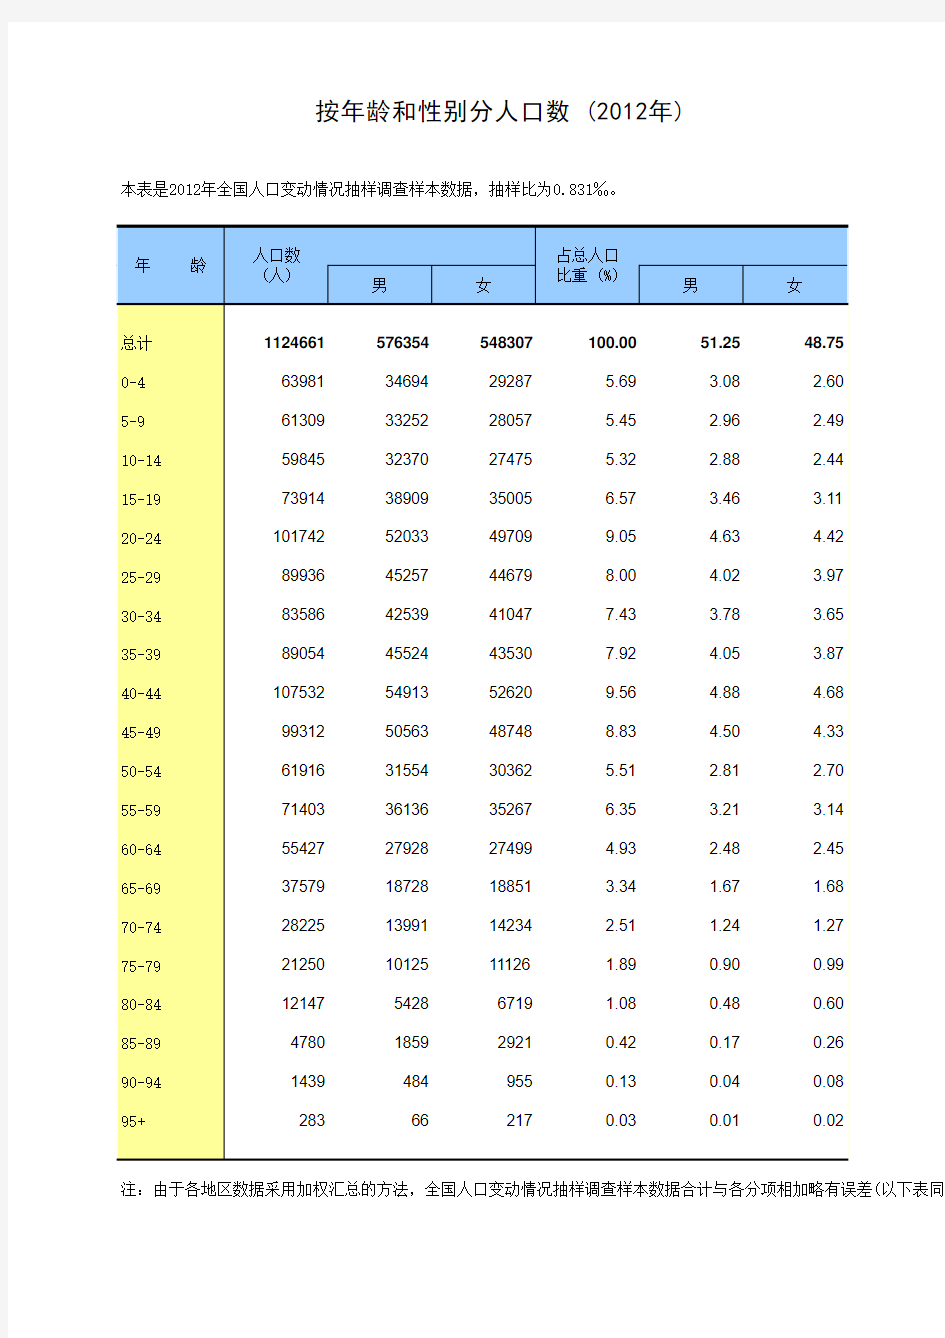 中国统计年鉴2013按年龄和性别分人口数